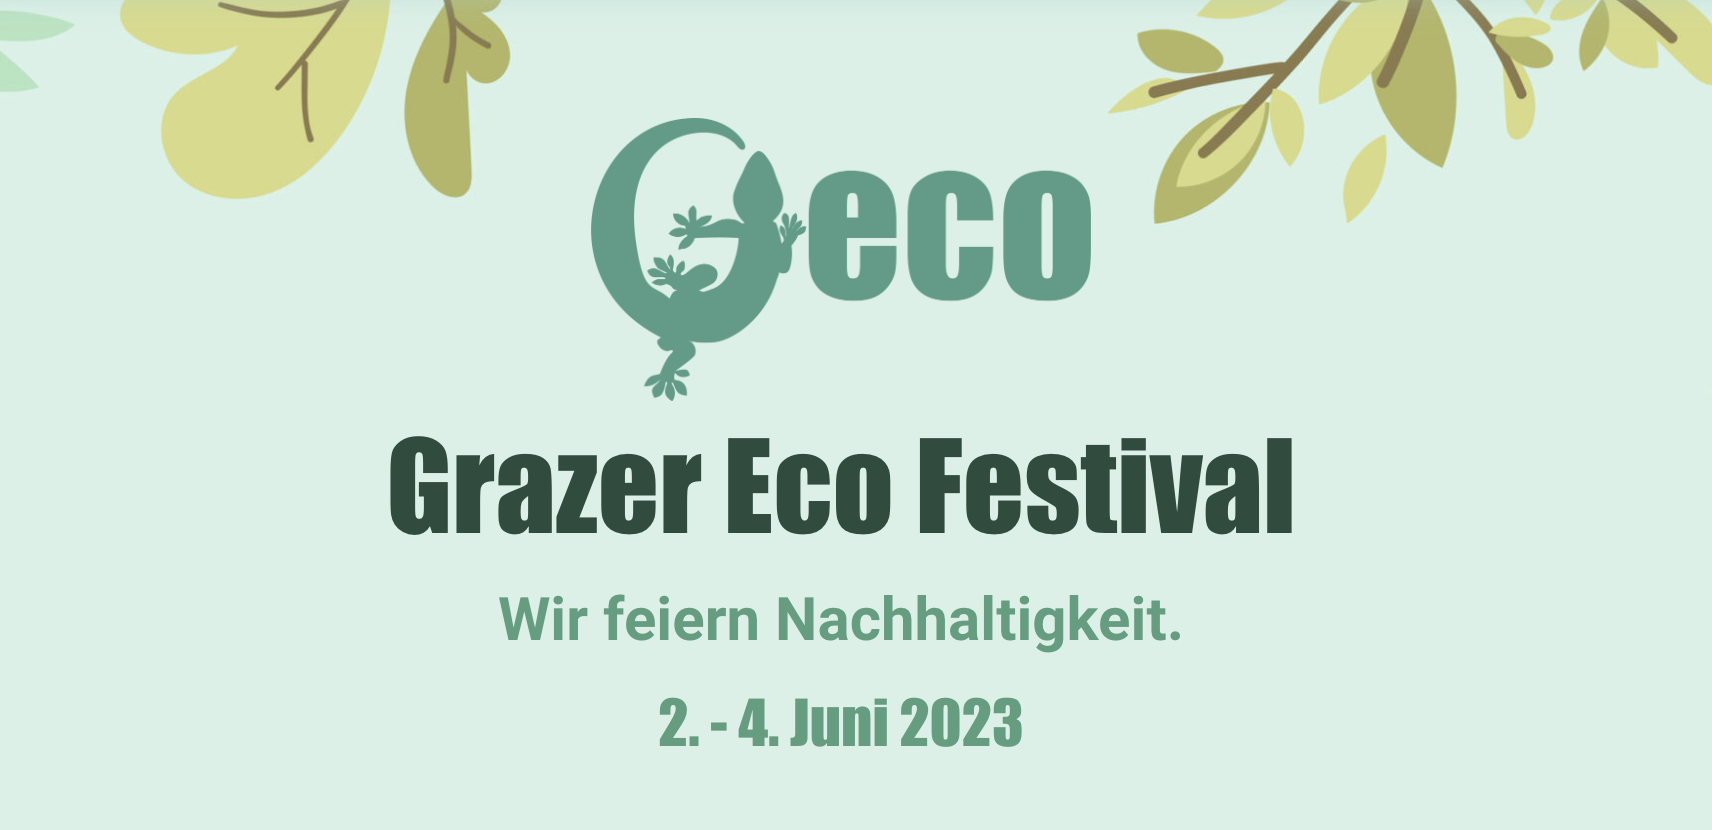 Grazer Eco Festival 2023